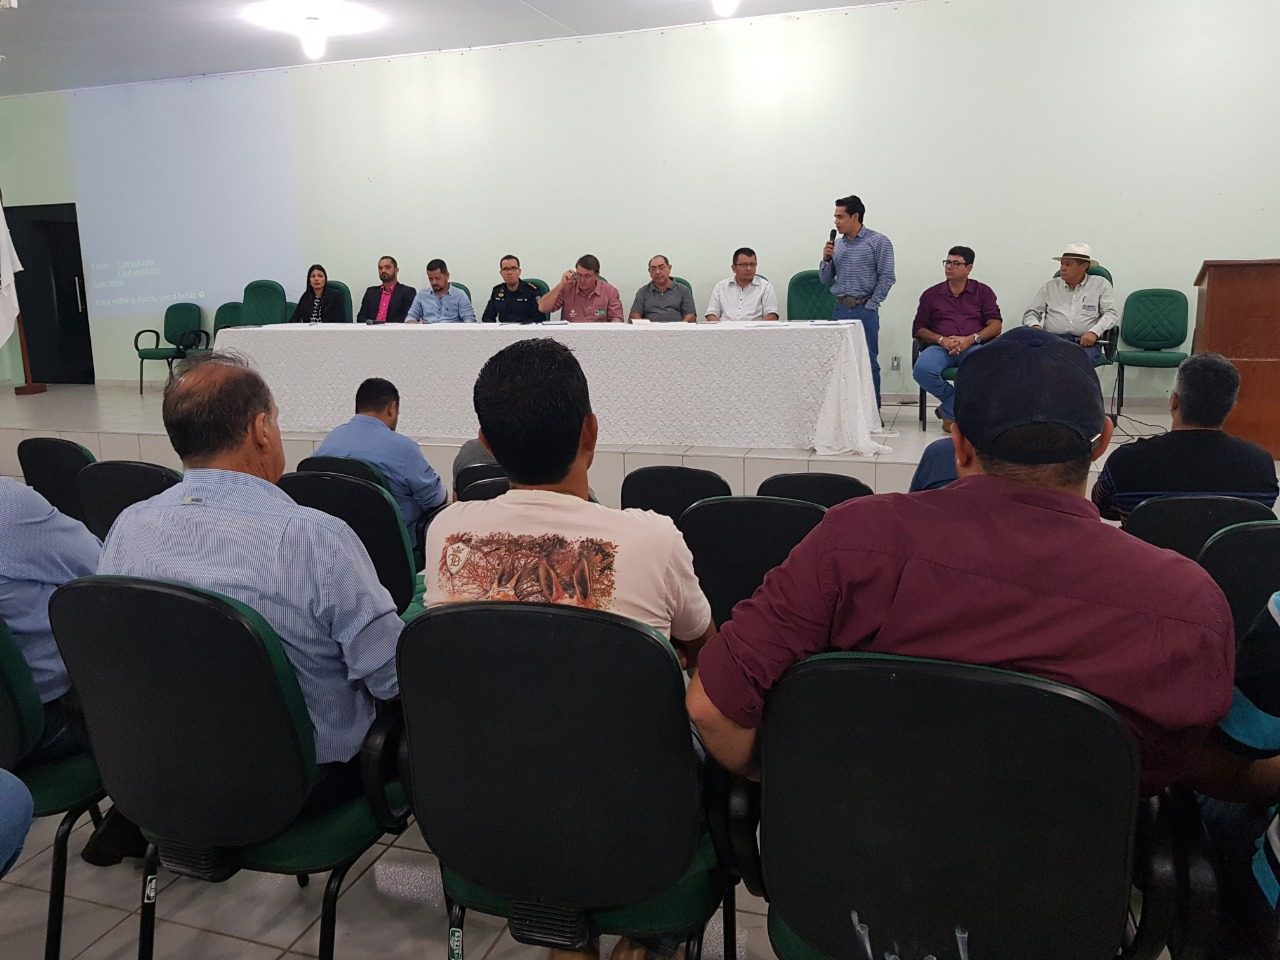 MELHORIAS - COMISSÃO CRIADA VISA ELABORAR PROJETO DE LEI PARA DESBUROCRATIZAR E NORMATIZAR A REALIZAÇÃO DAS FEIRAS AGROPECUÁRIAS EM RONDÔNIA - News Rondônia